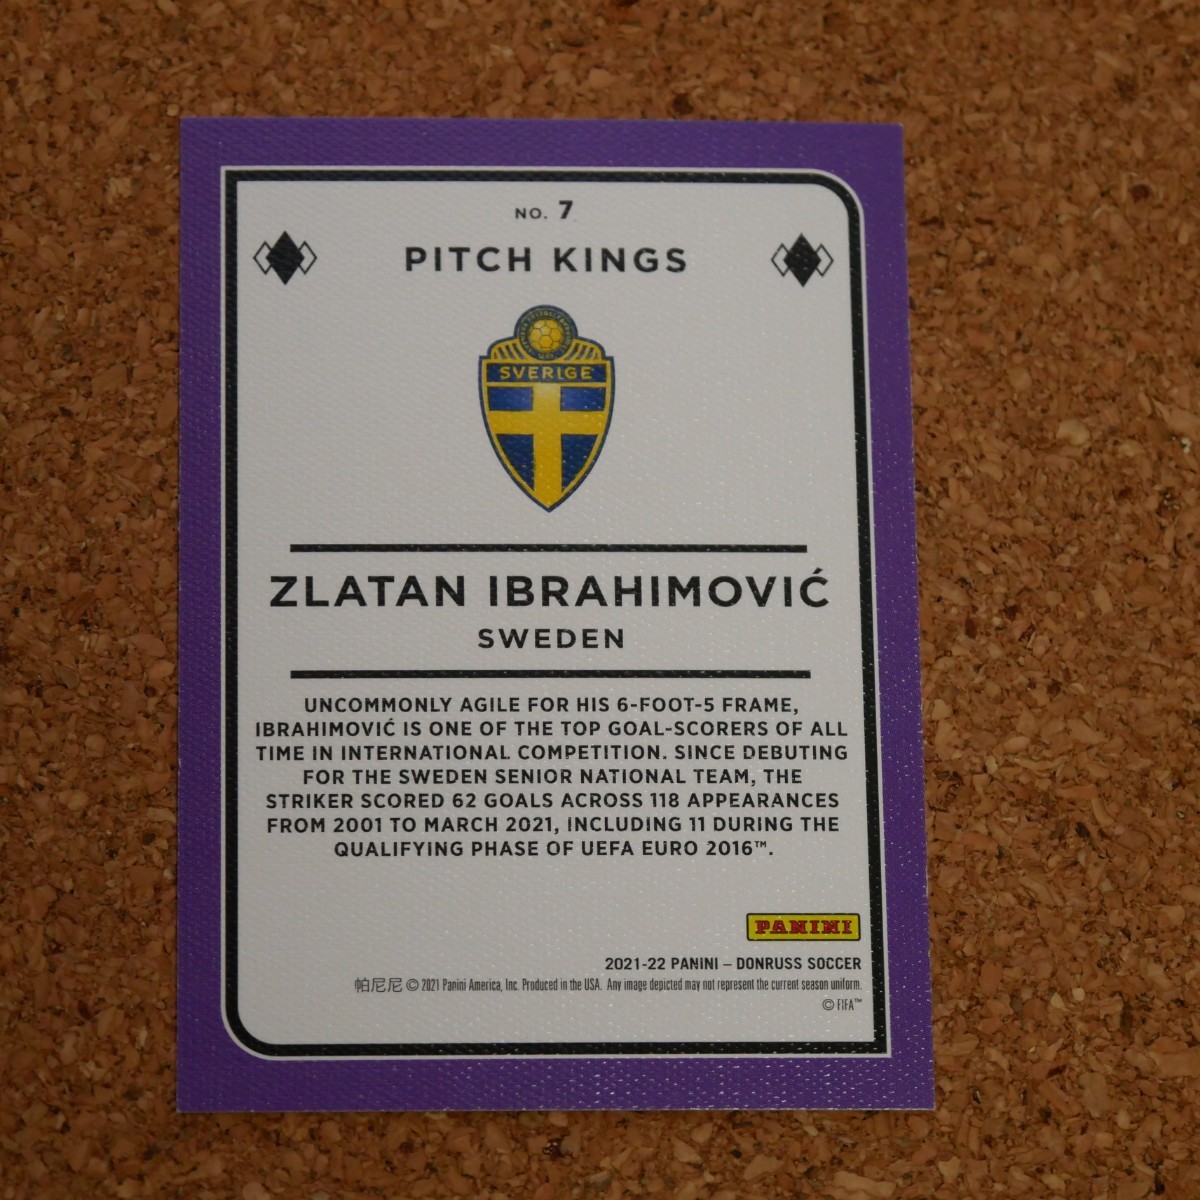 panini donruss soccer Zlatan Ibrahimovic パニーニドンラスサッカー ズラタン・イブラヒモビッチ スウェーデン ミラン pitch kings_画像2